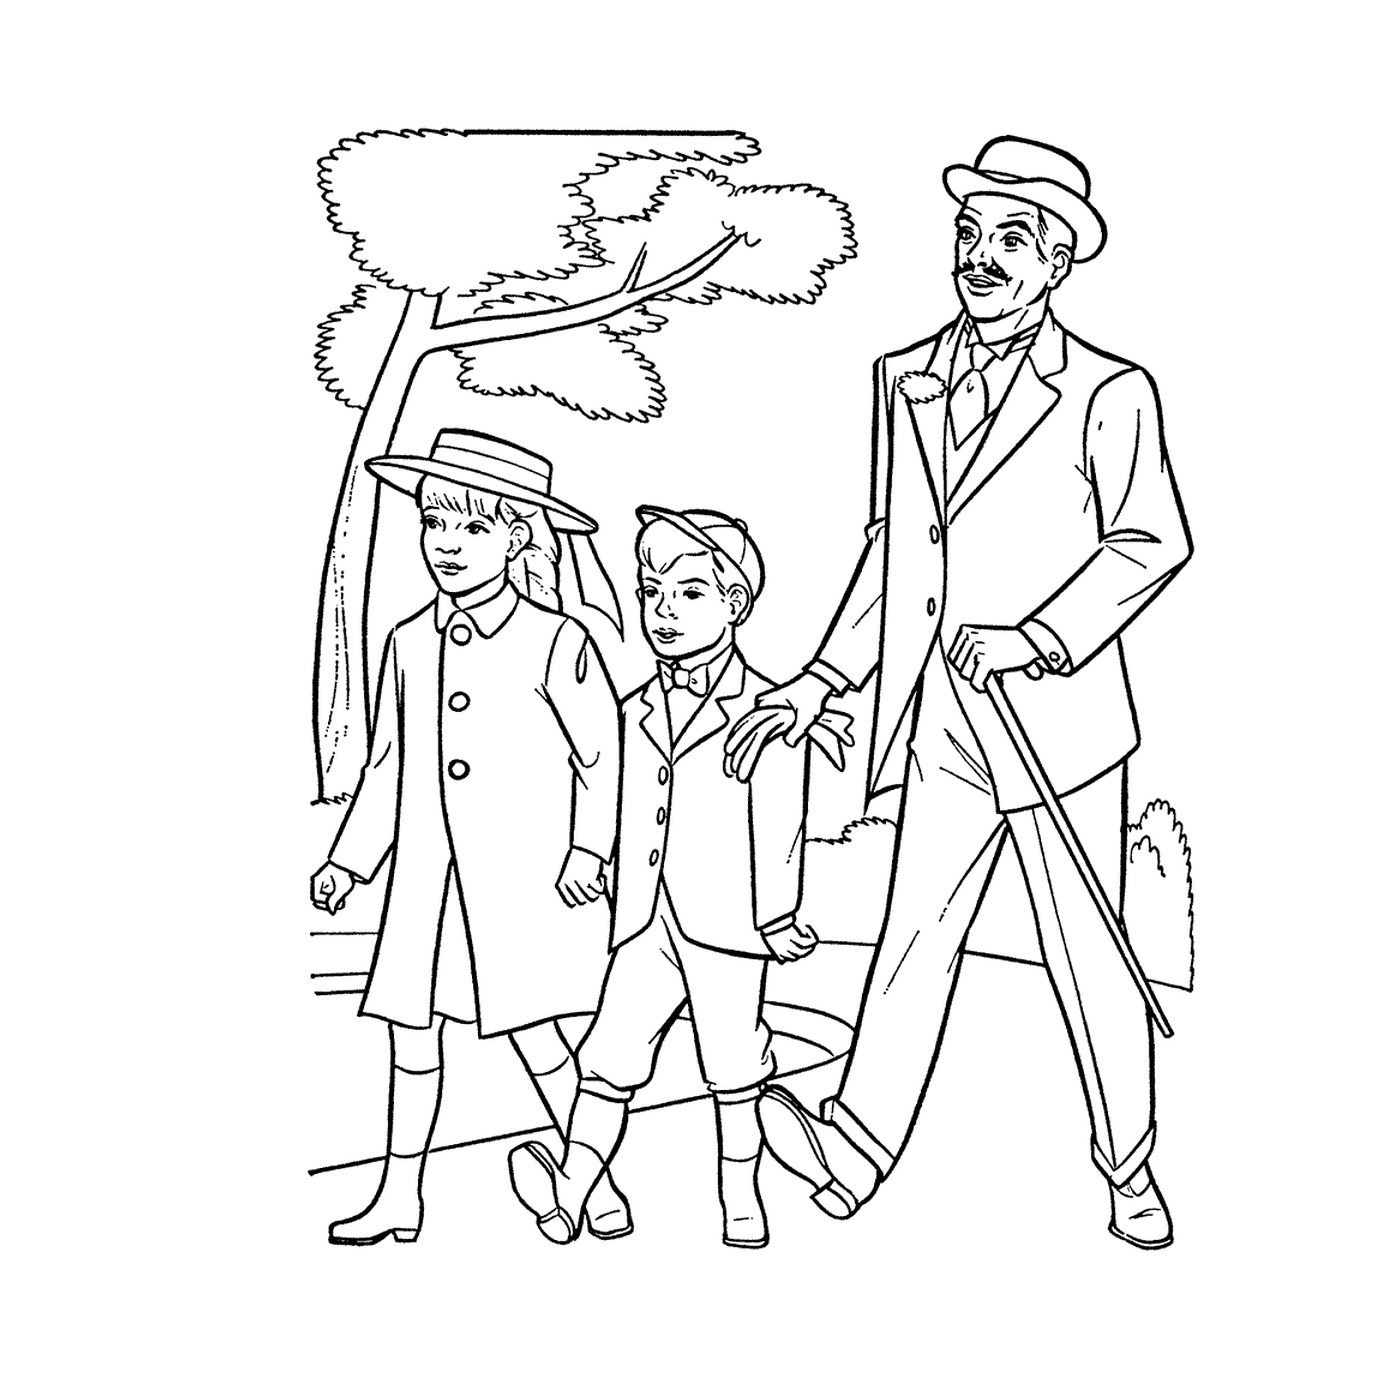   Un homme et deux enfants 